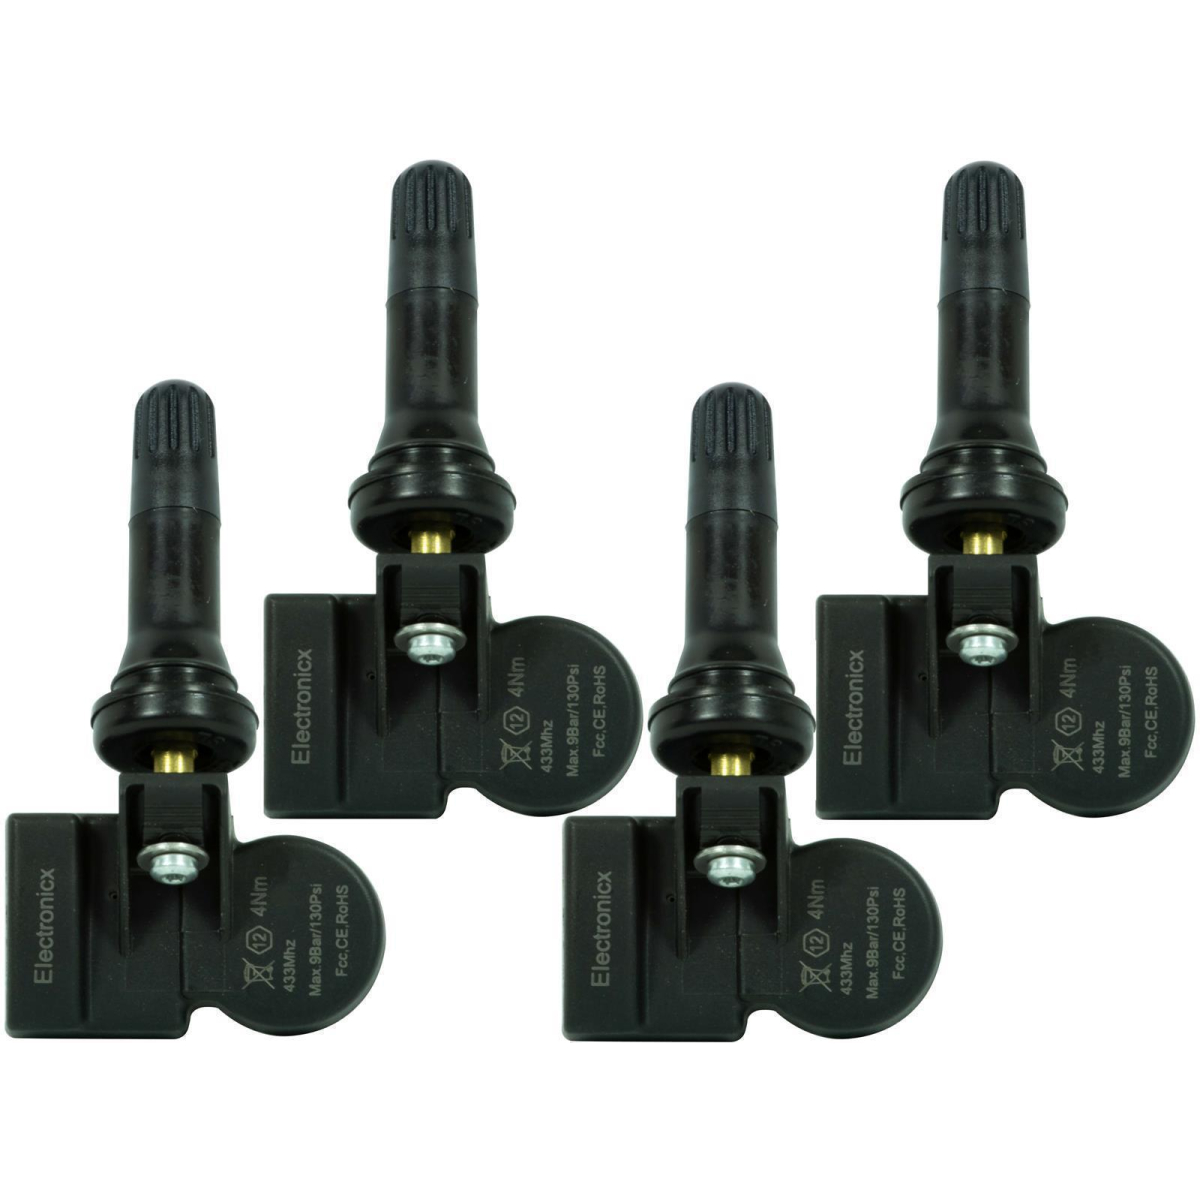 4 tire pressure sensors rdks sensors rubber valve for Lada Largus 10.2015-12.2020